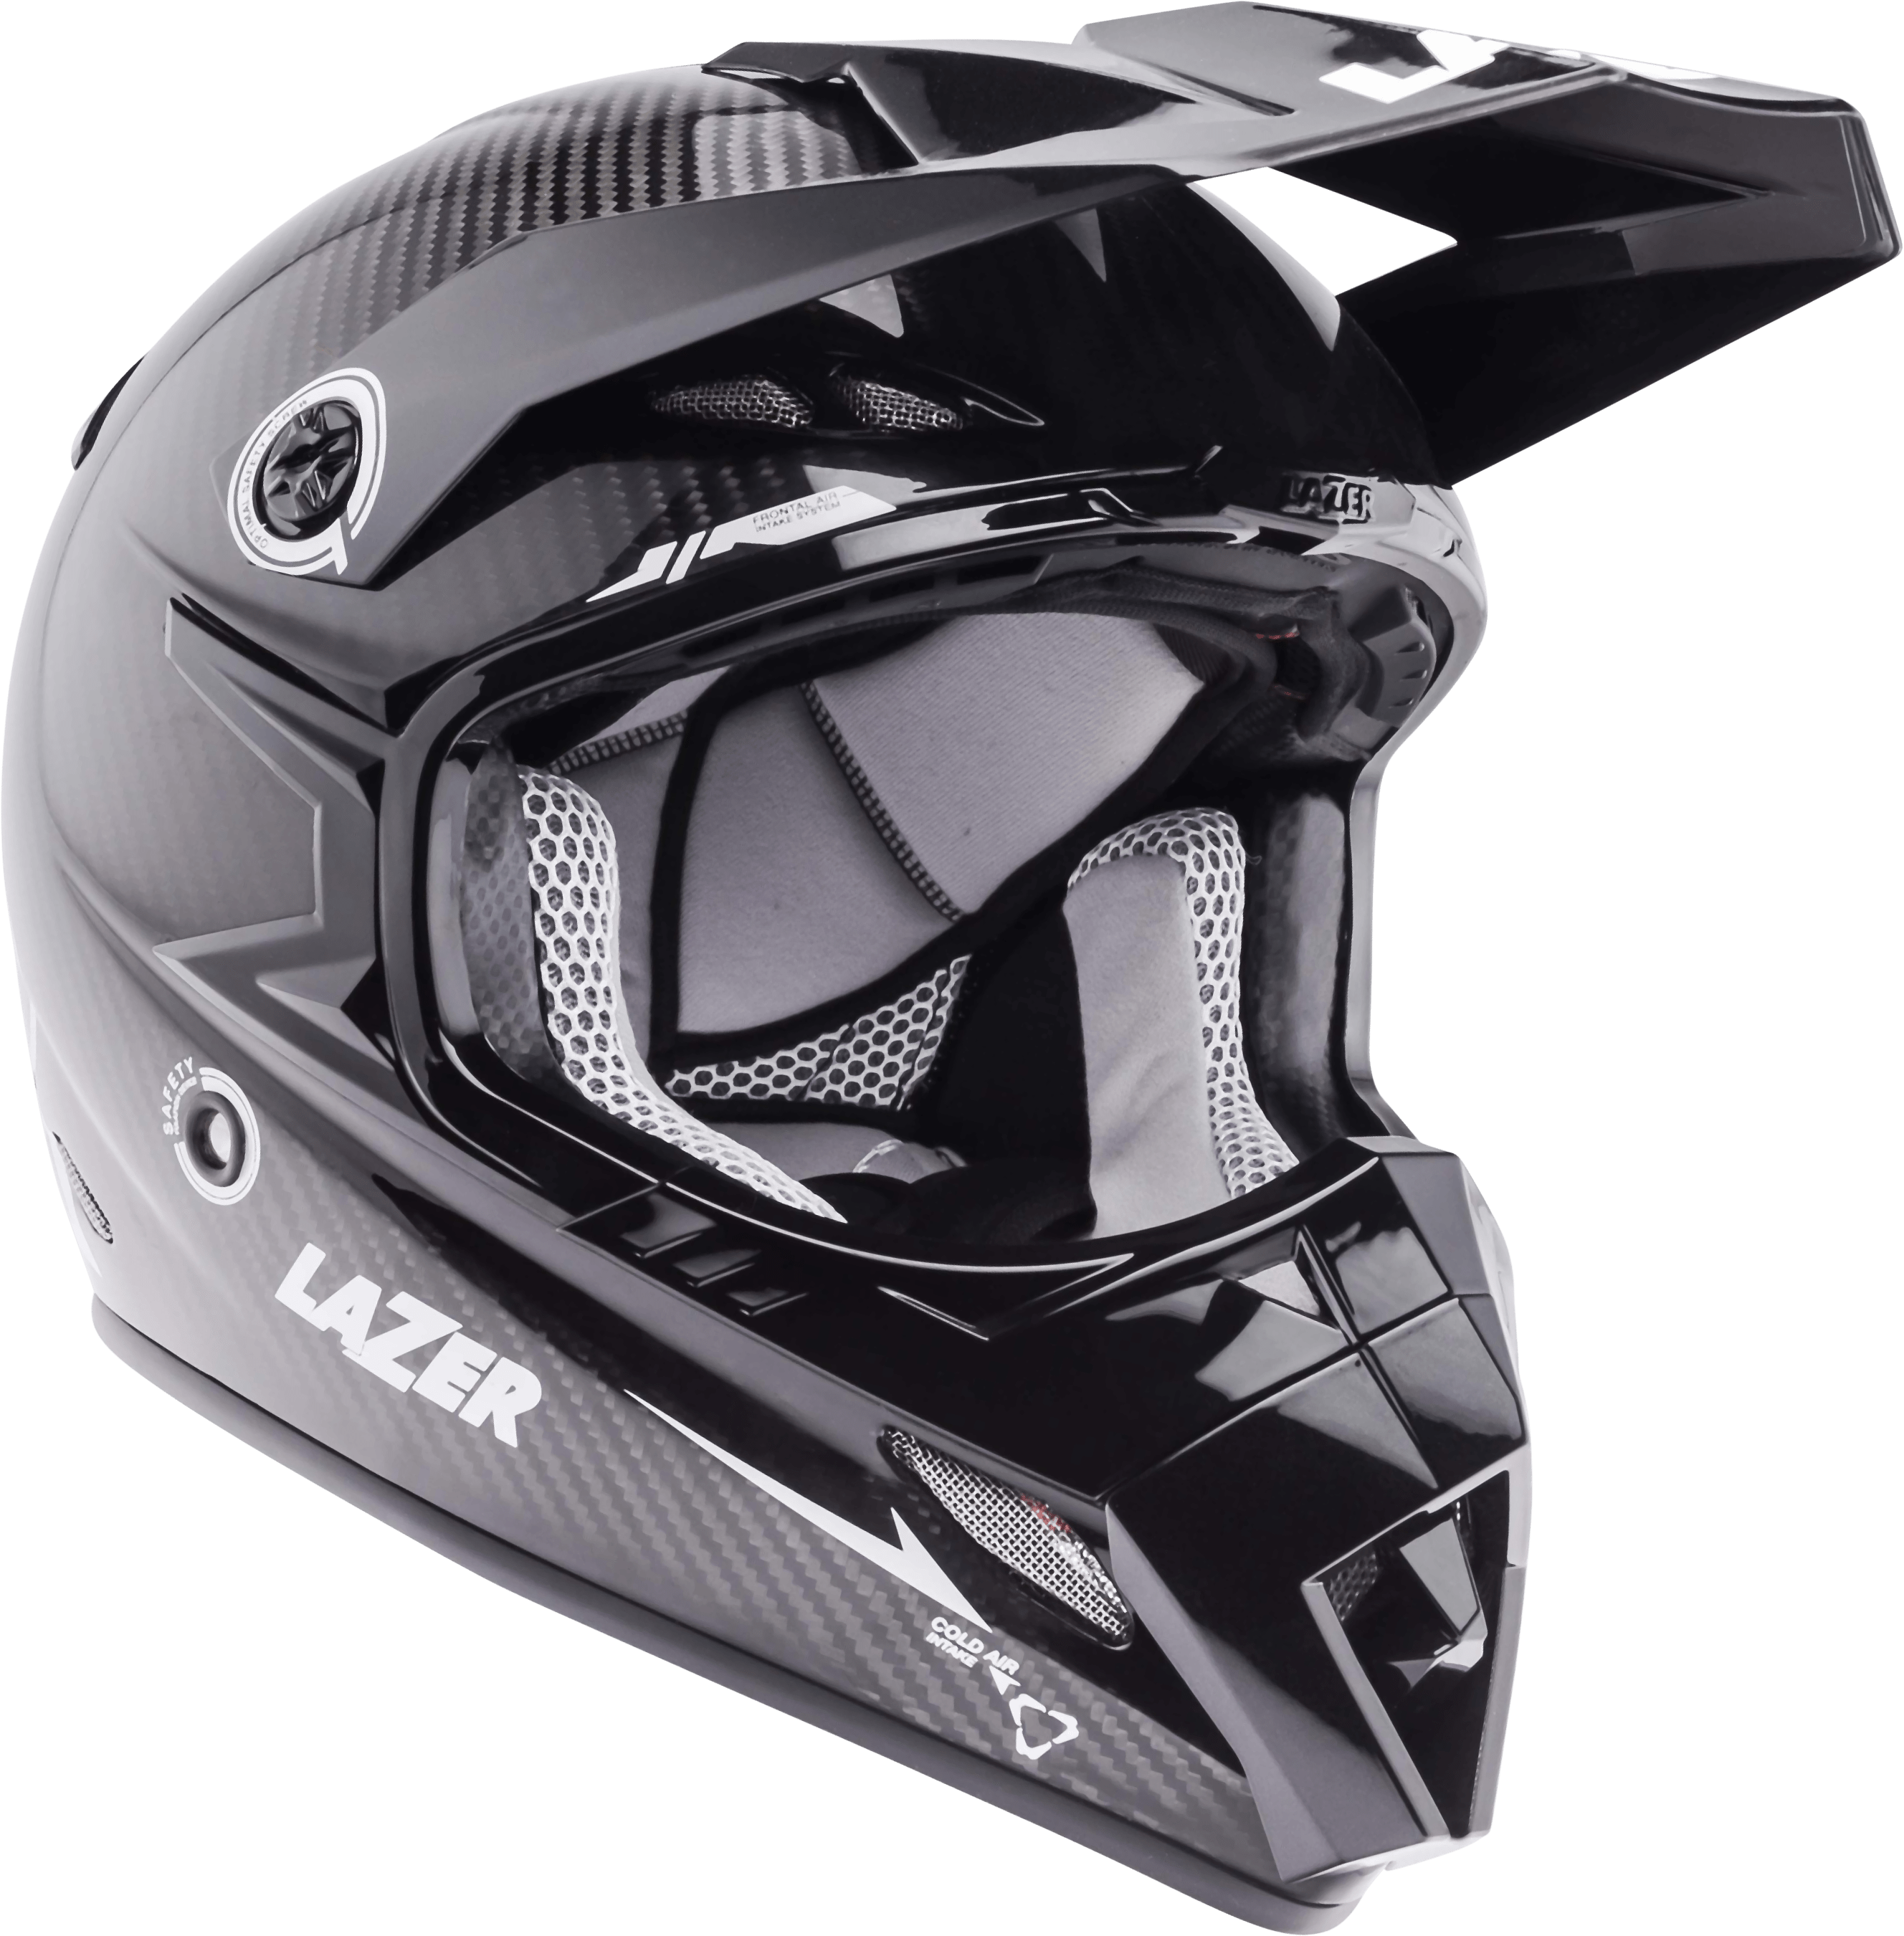 Motorcycle Helmet Motocross Black Black Motorcycle Helmet Png Download 2656 2701 Free Transparent Motorcycle Helmets Png Download Clip Art Library